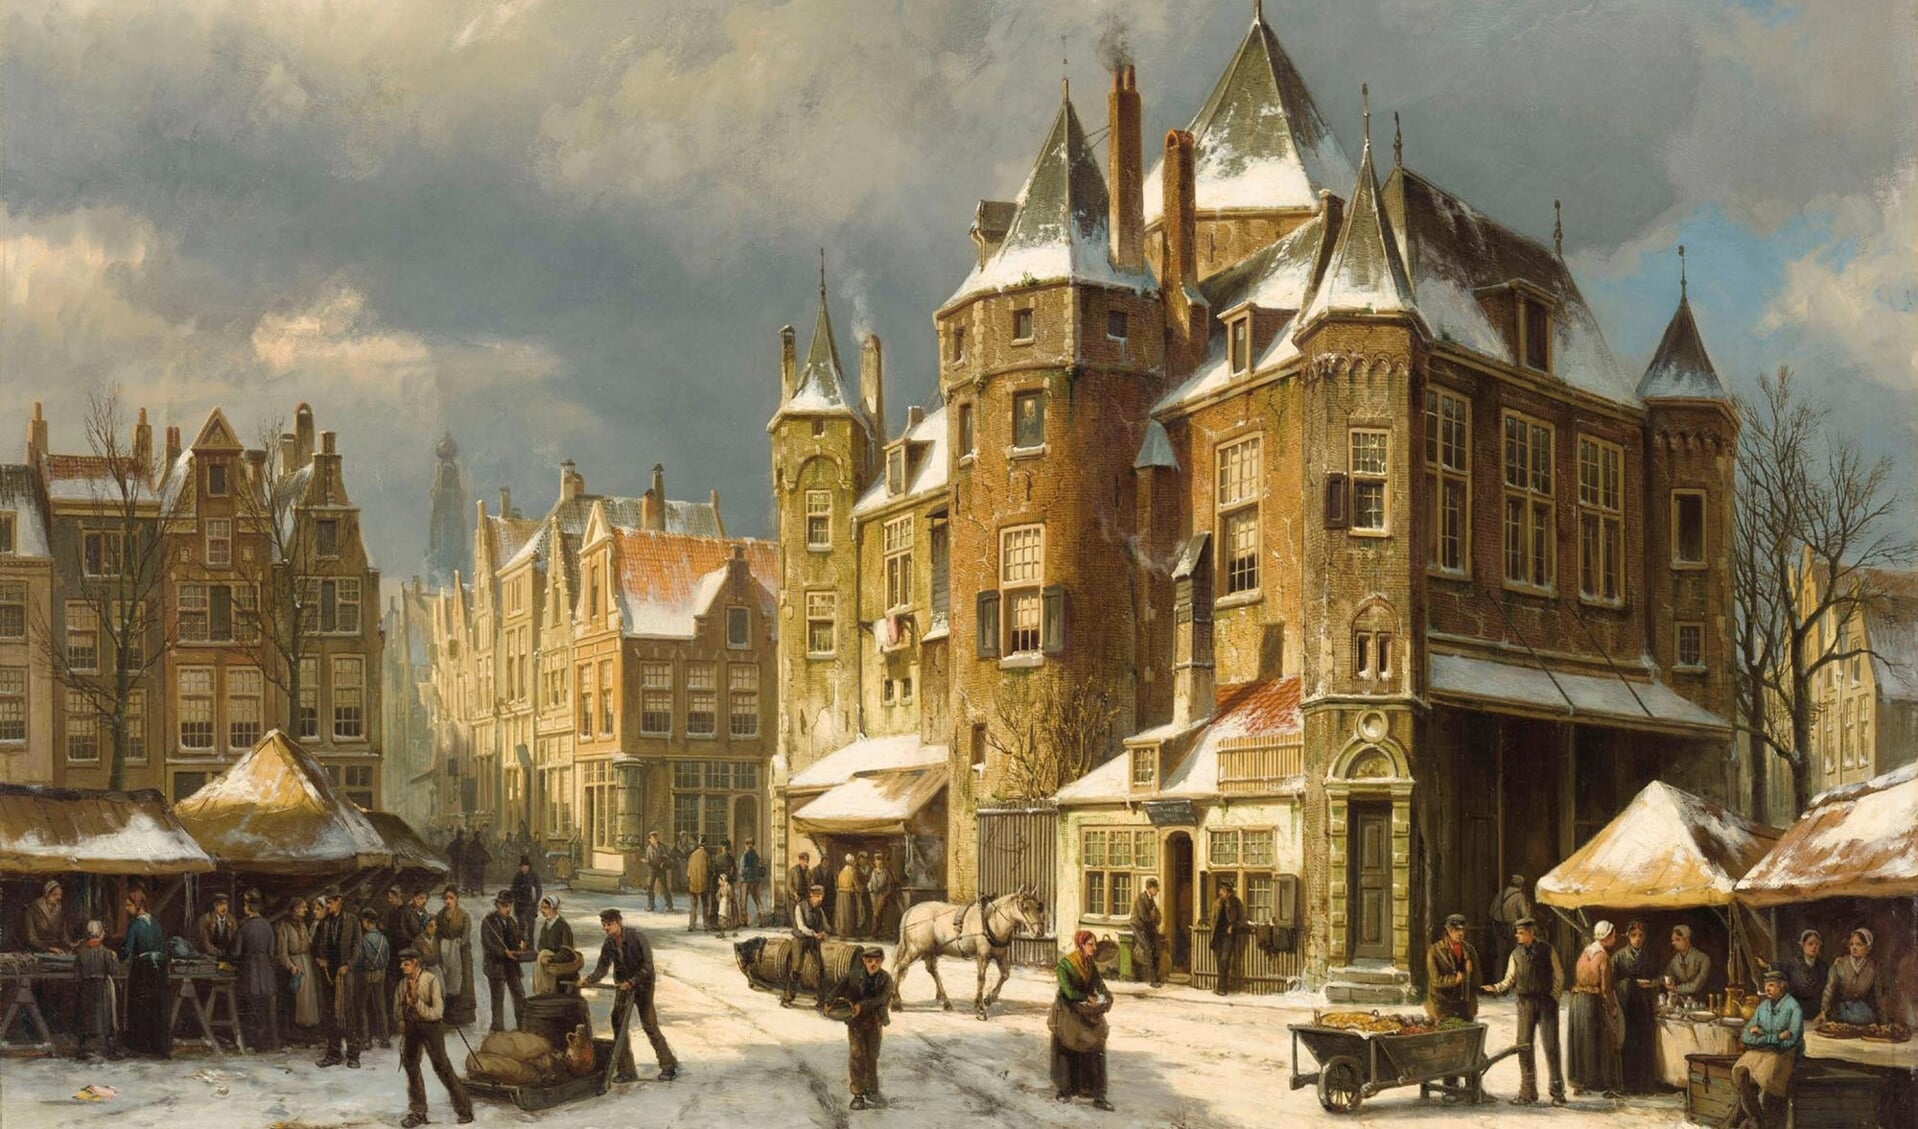 De Nieuwmarkt in Amsterdam in de winter. Schilderij van Willem Koekkoek (1839-1895).